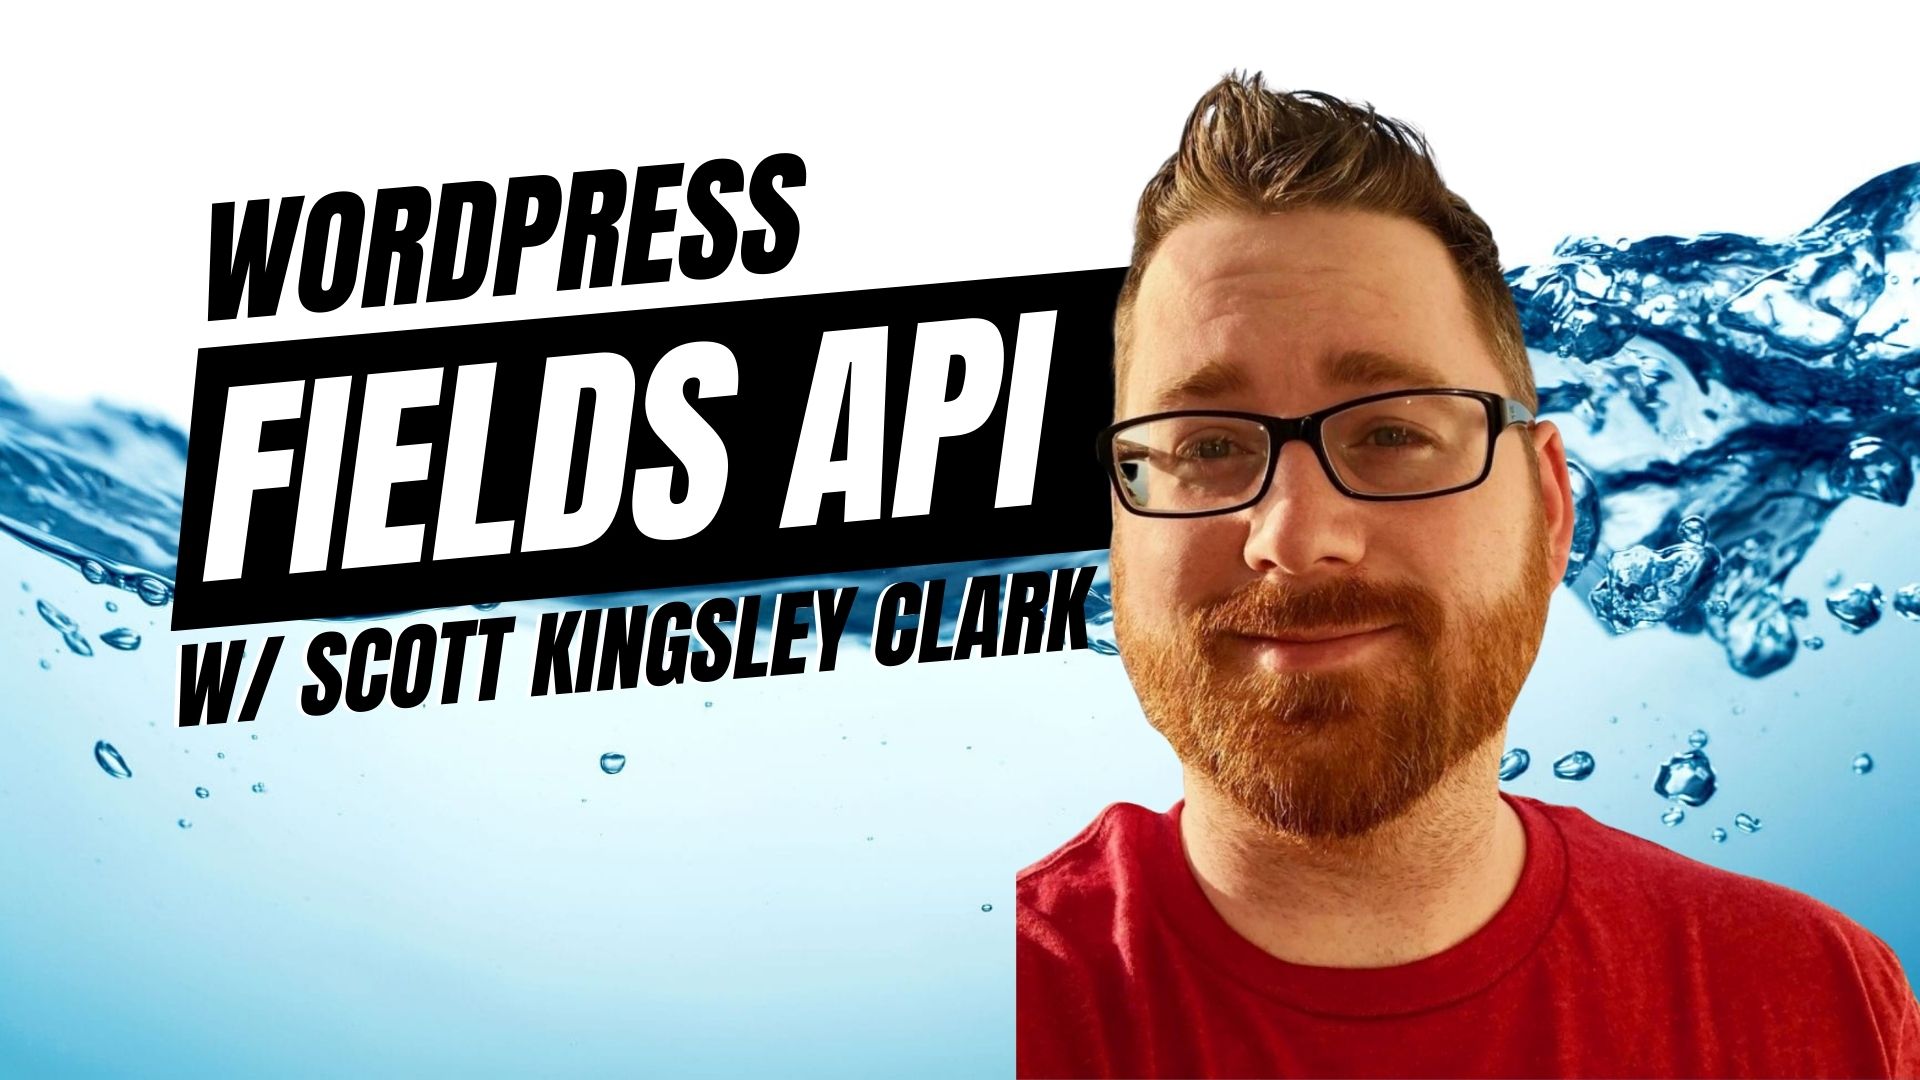 EP443 - WordPress Fields API with Scott Kingsley Clark